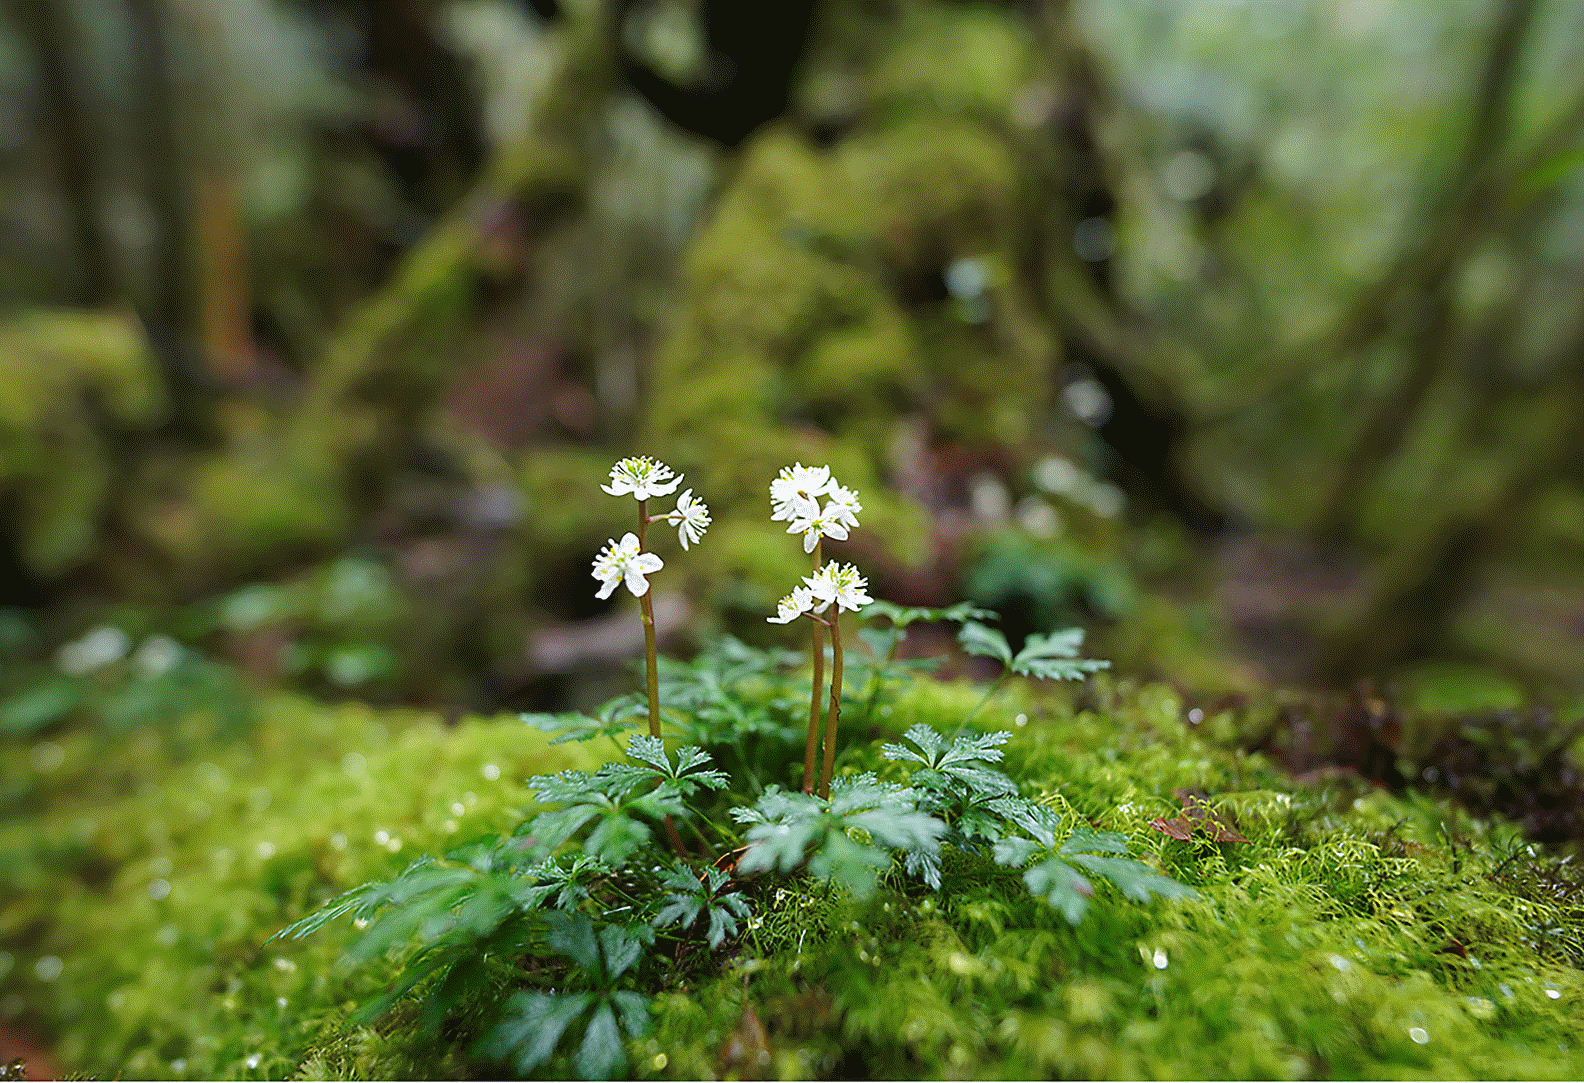 En bild av en liten blomma i fokus på en sten i skogen, med hög oskärpa framför och bakom